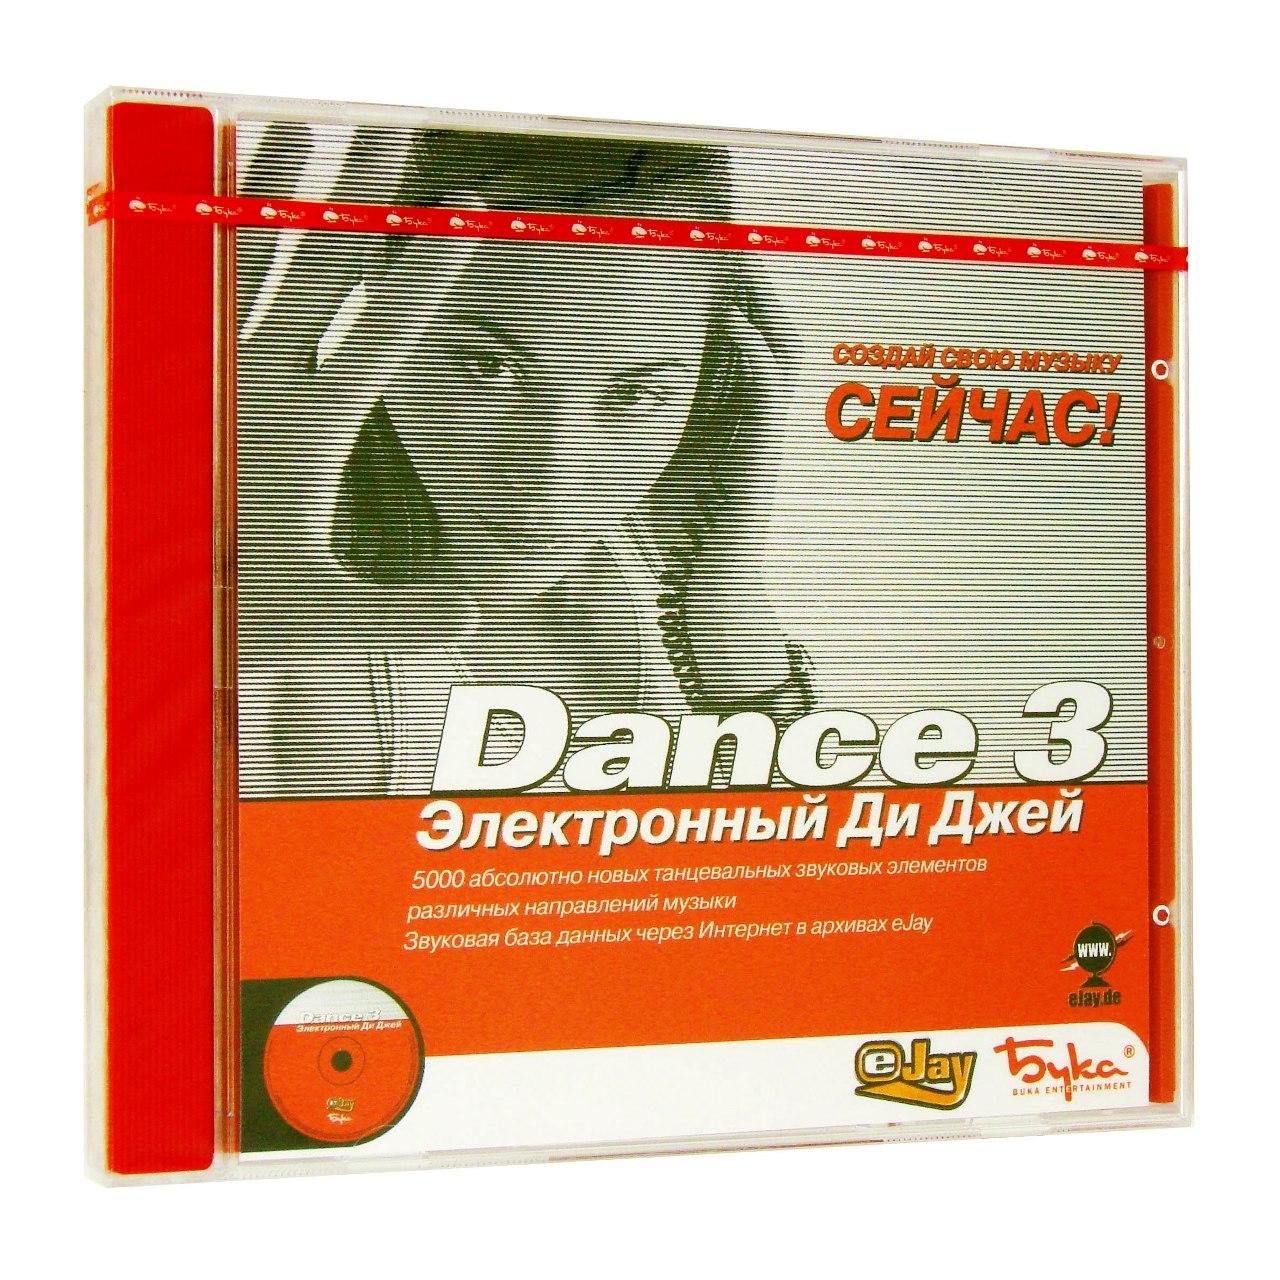 Компьютерный компакт-диск Электронный Ди Джей (ПК), фирма "Бука", 1CD